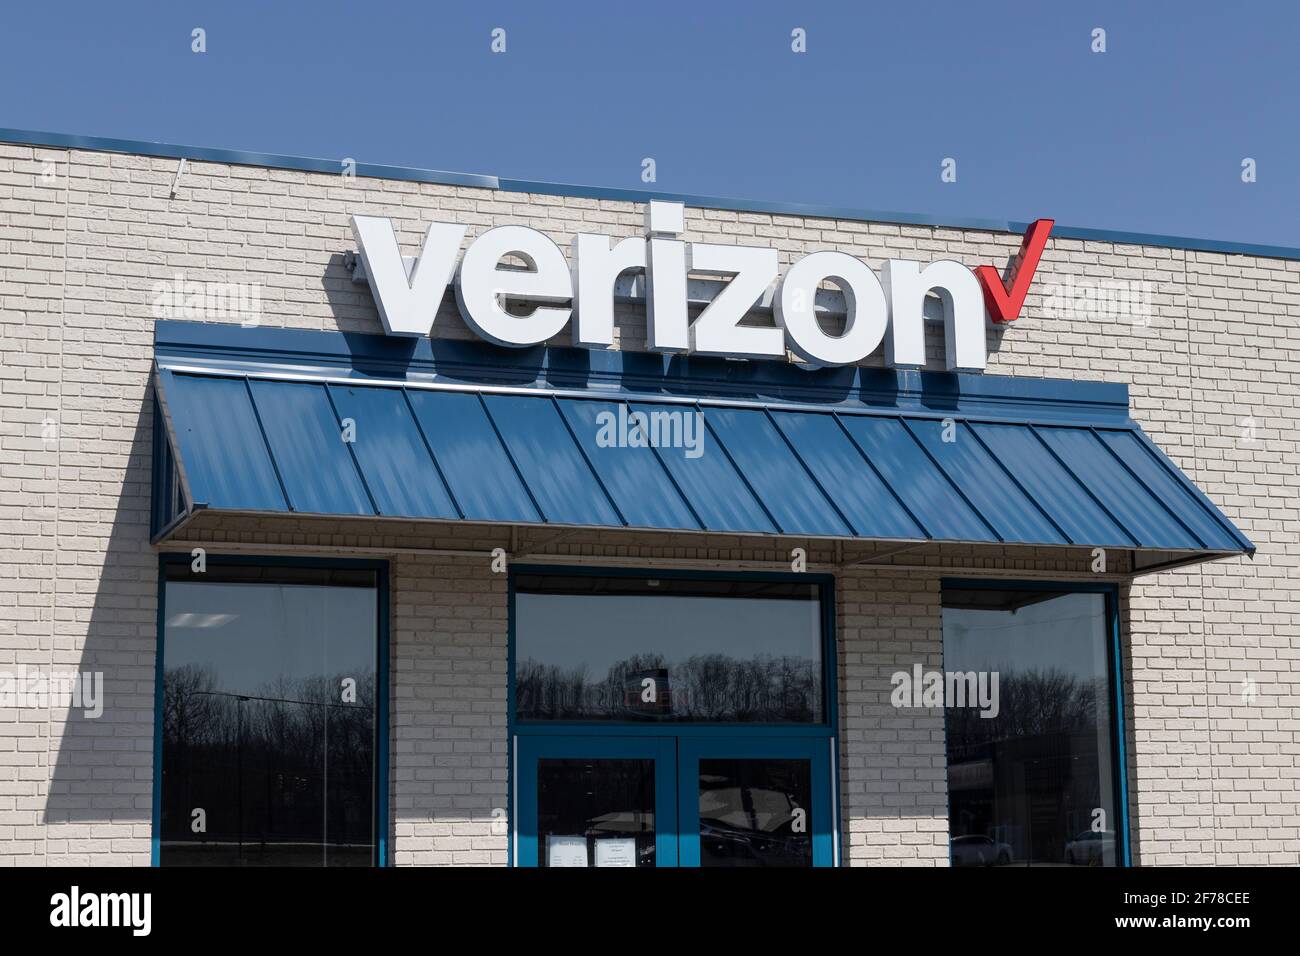 Delphi - Ca. April 2021: Verizon Wireless Retail Location. Verizon liefert drahtlose Glasfaserverbindungen mit hoher Kapazität und 5G-Kommunikation. Stockfoto